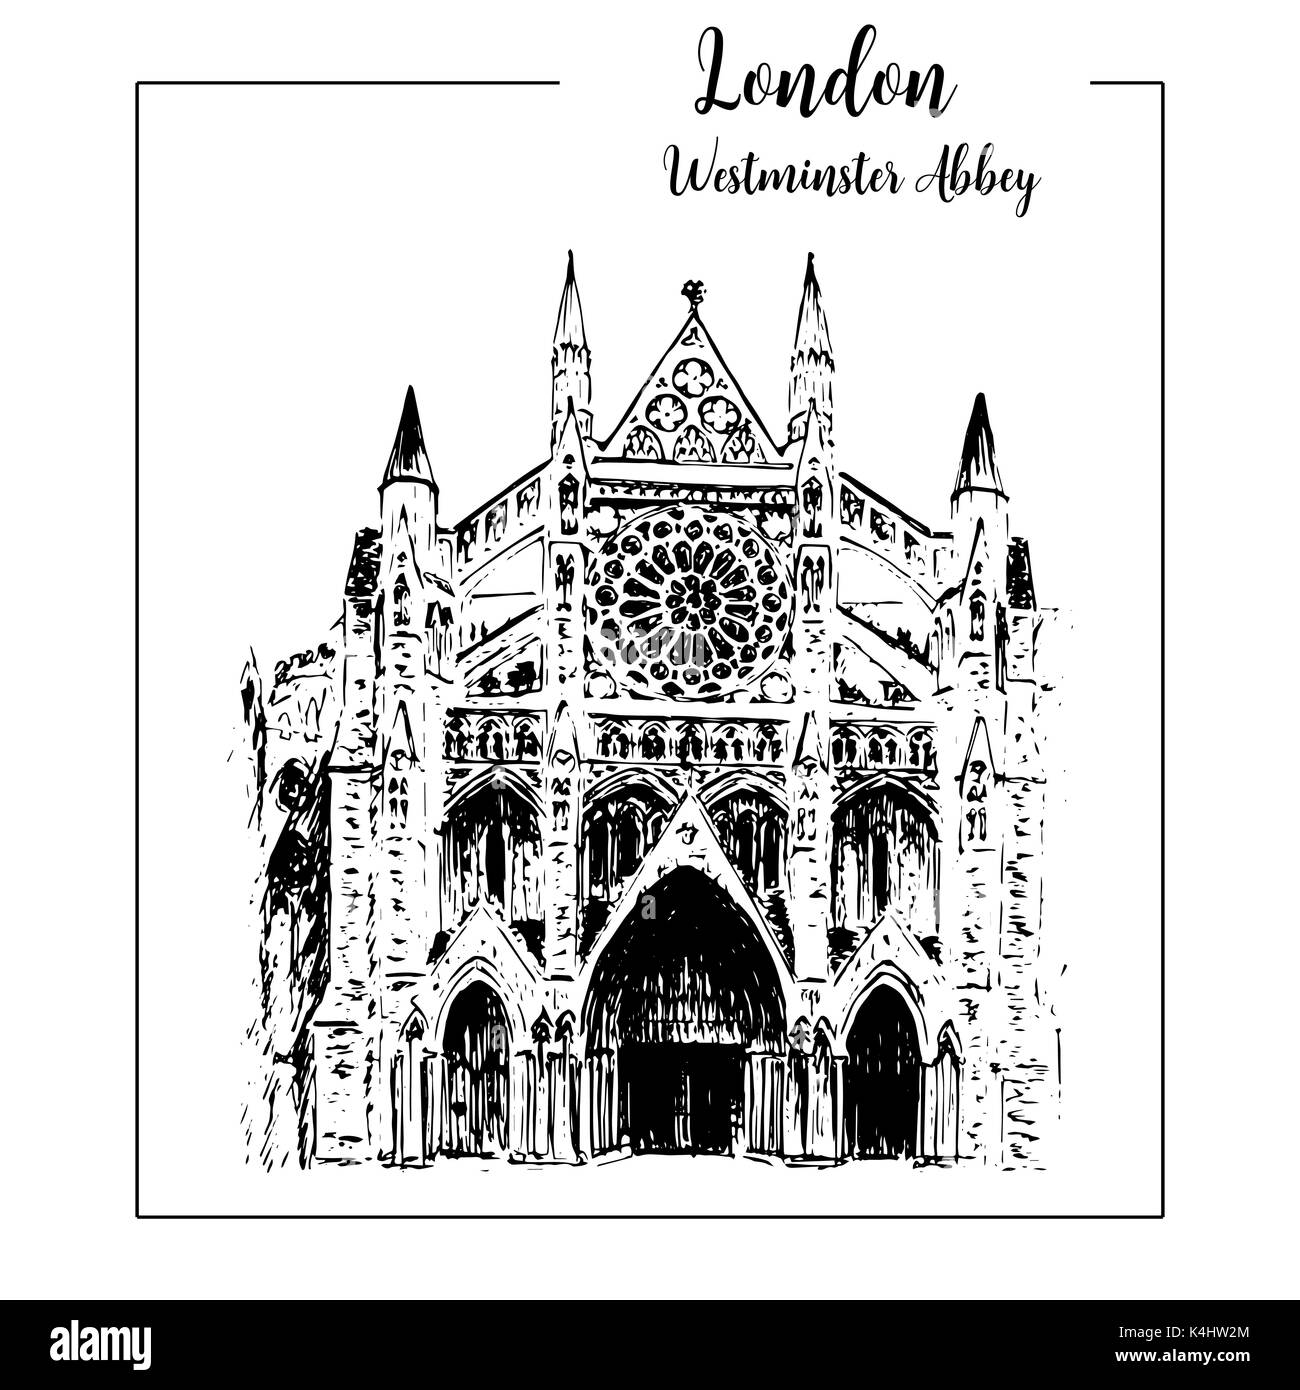 Westminster Abbey, London architektonischen Symbol. Wunderschöne handgezeichnete Skizze Vector Illustration Stock Vektor